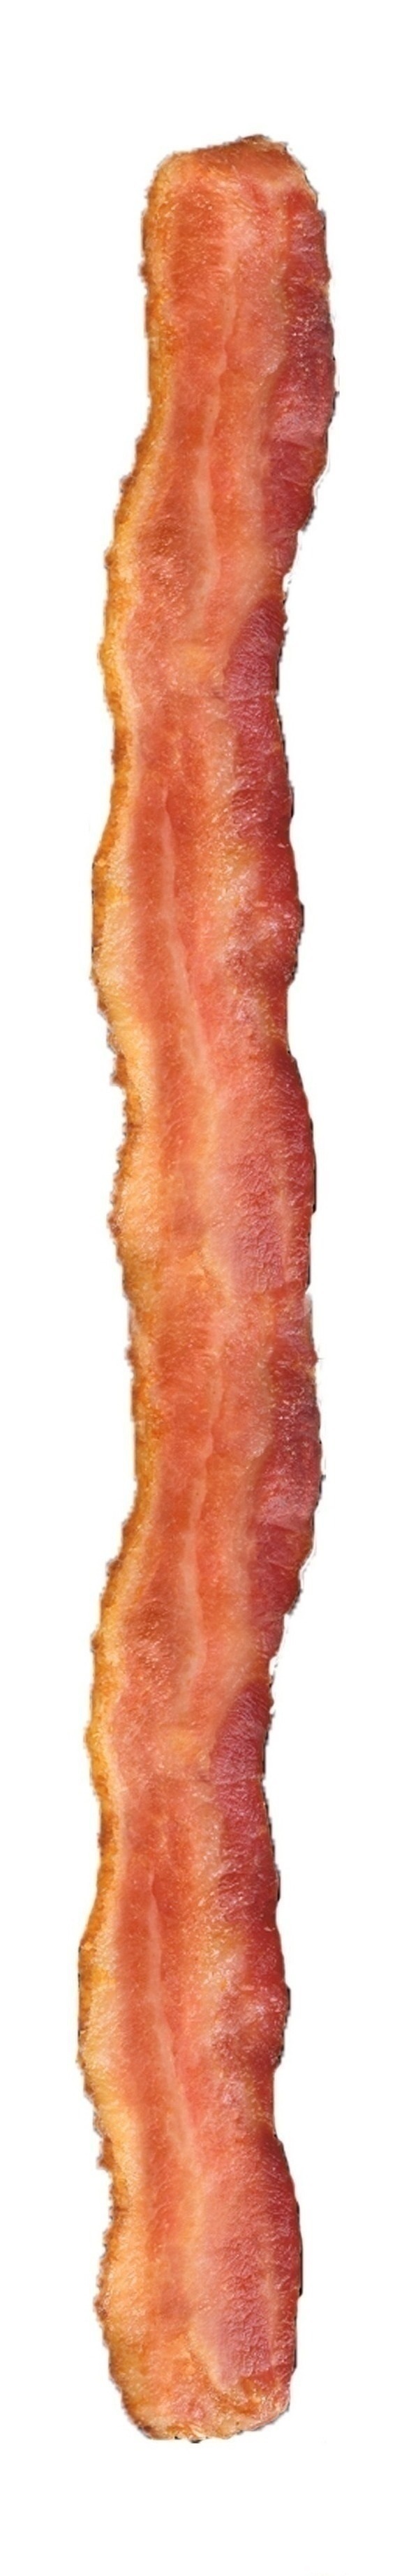 Bacon Strips crewneck